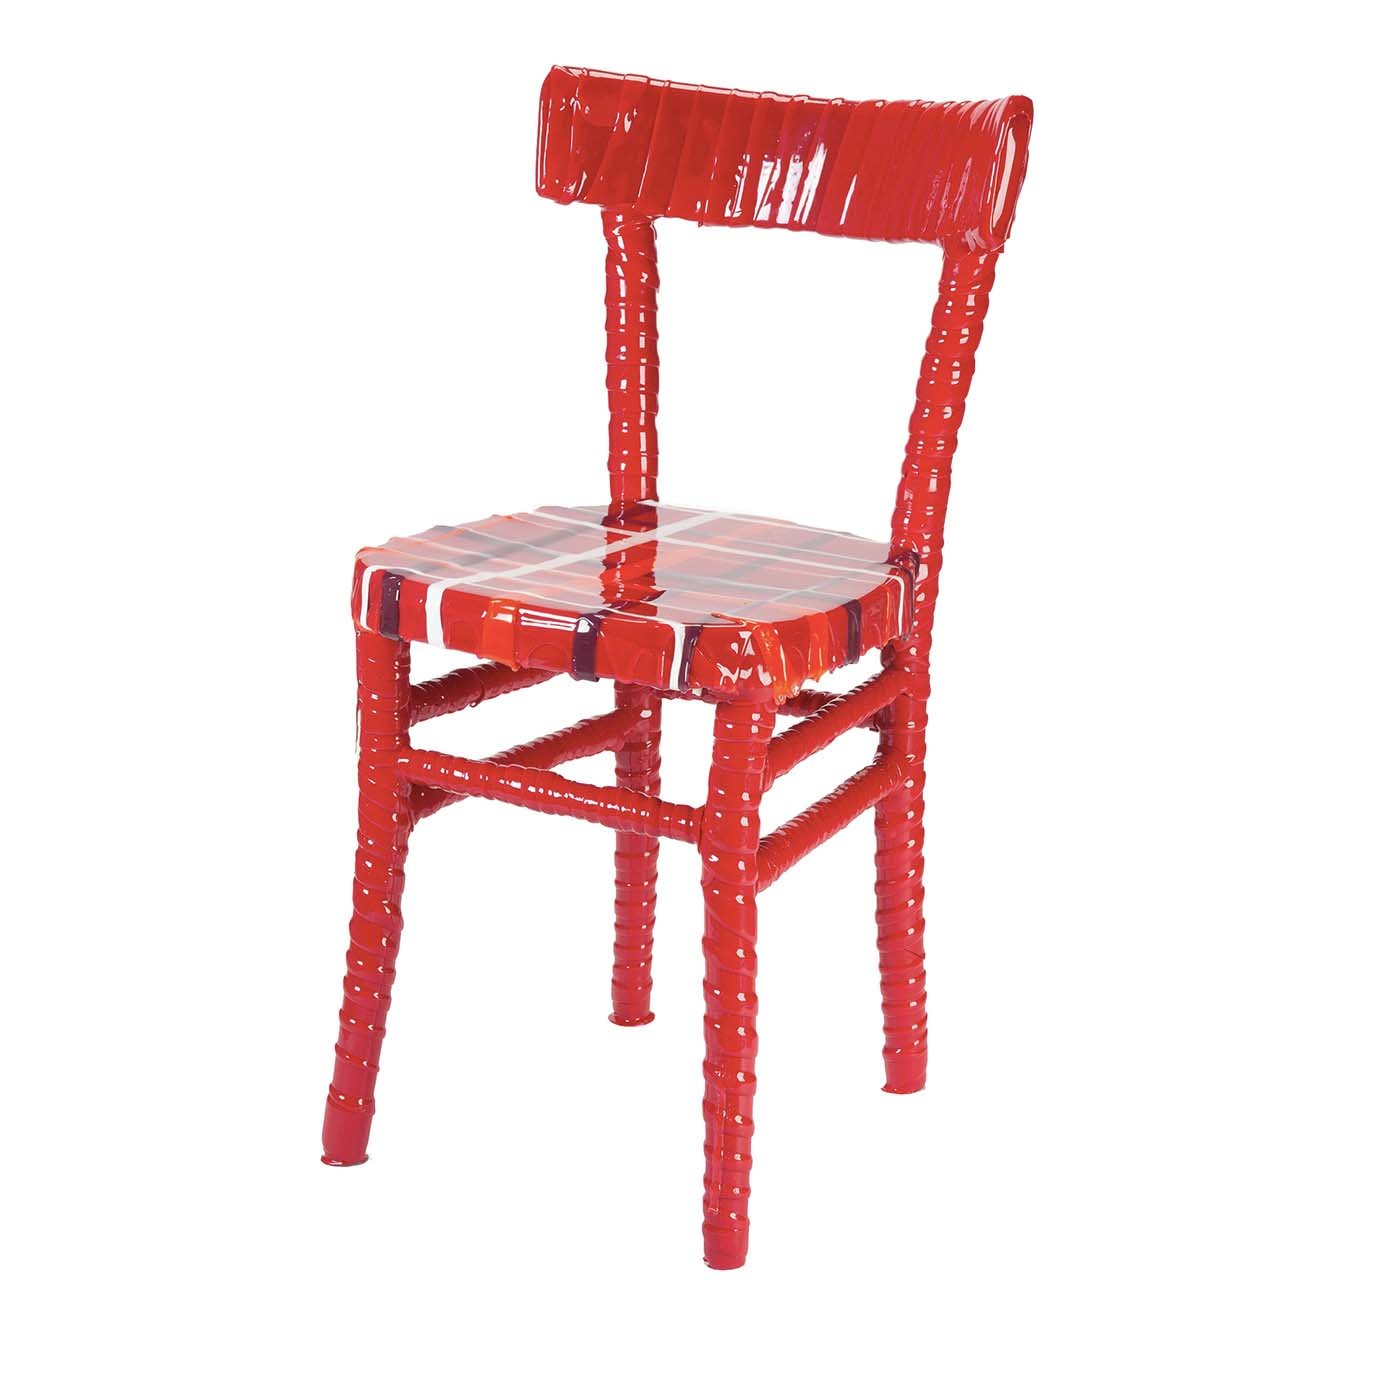 N. 02/20 Chaise unique en résine rouge rayée de Paola Navone - Vue principale